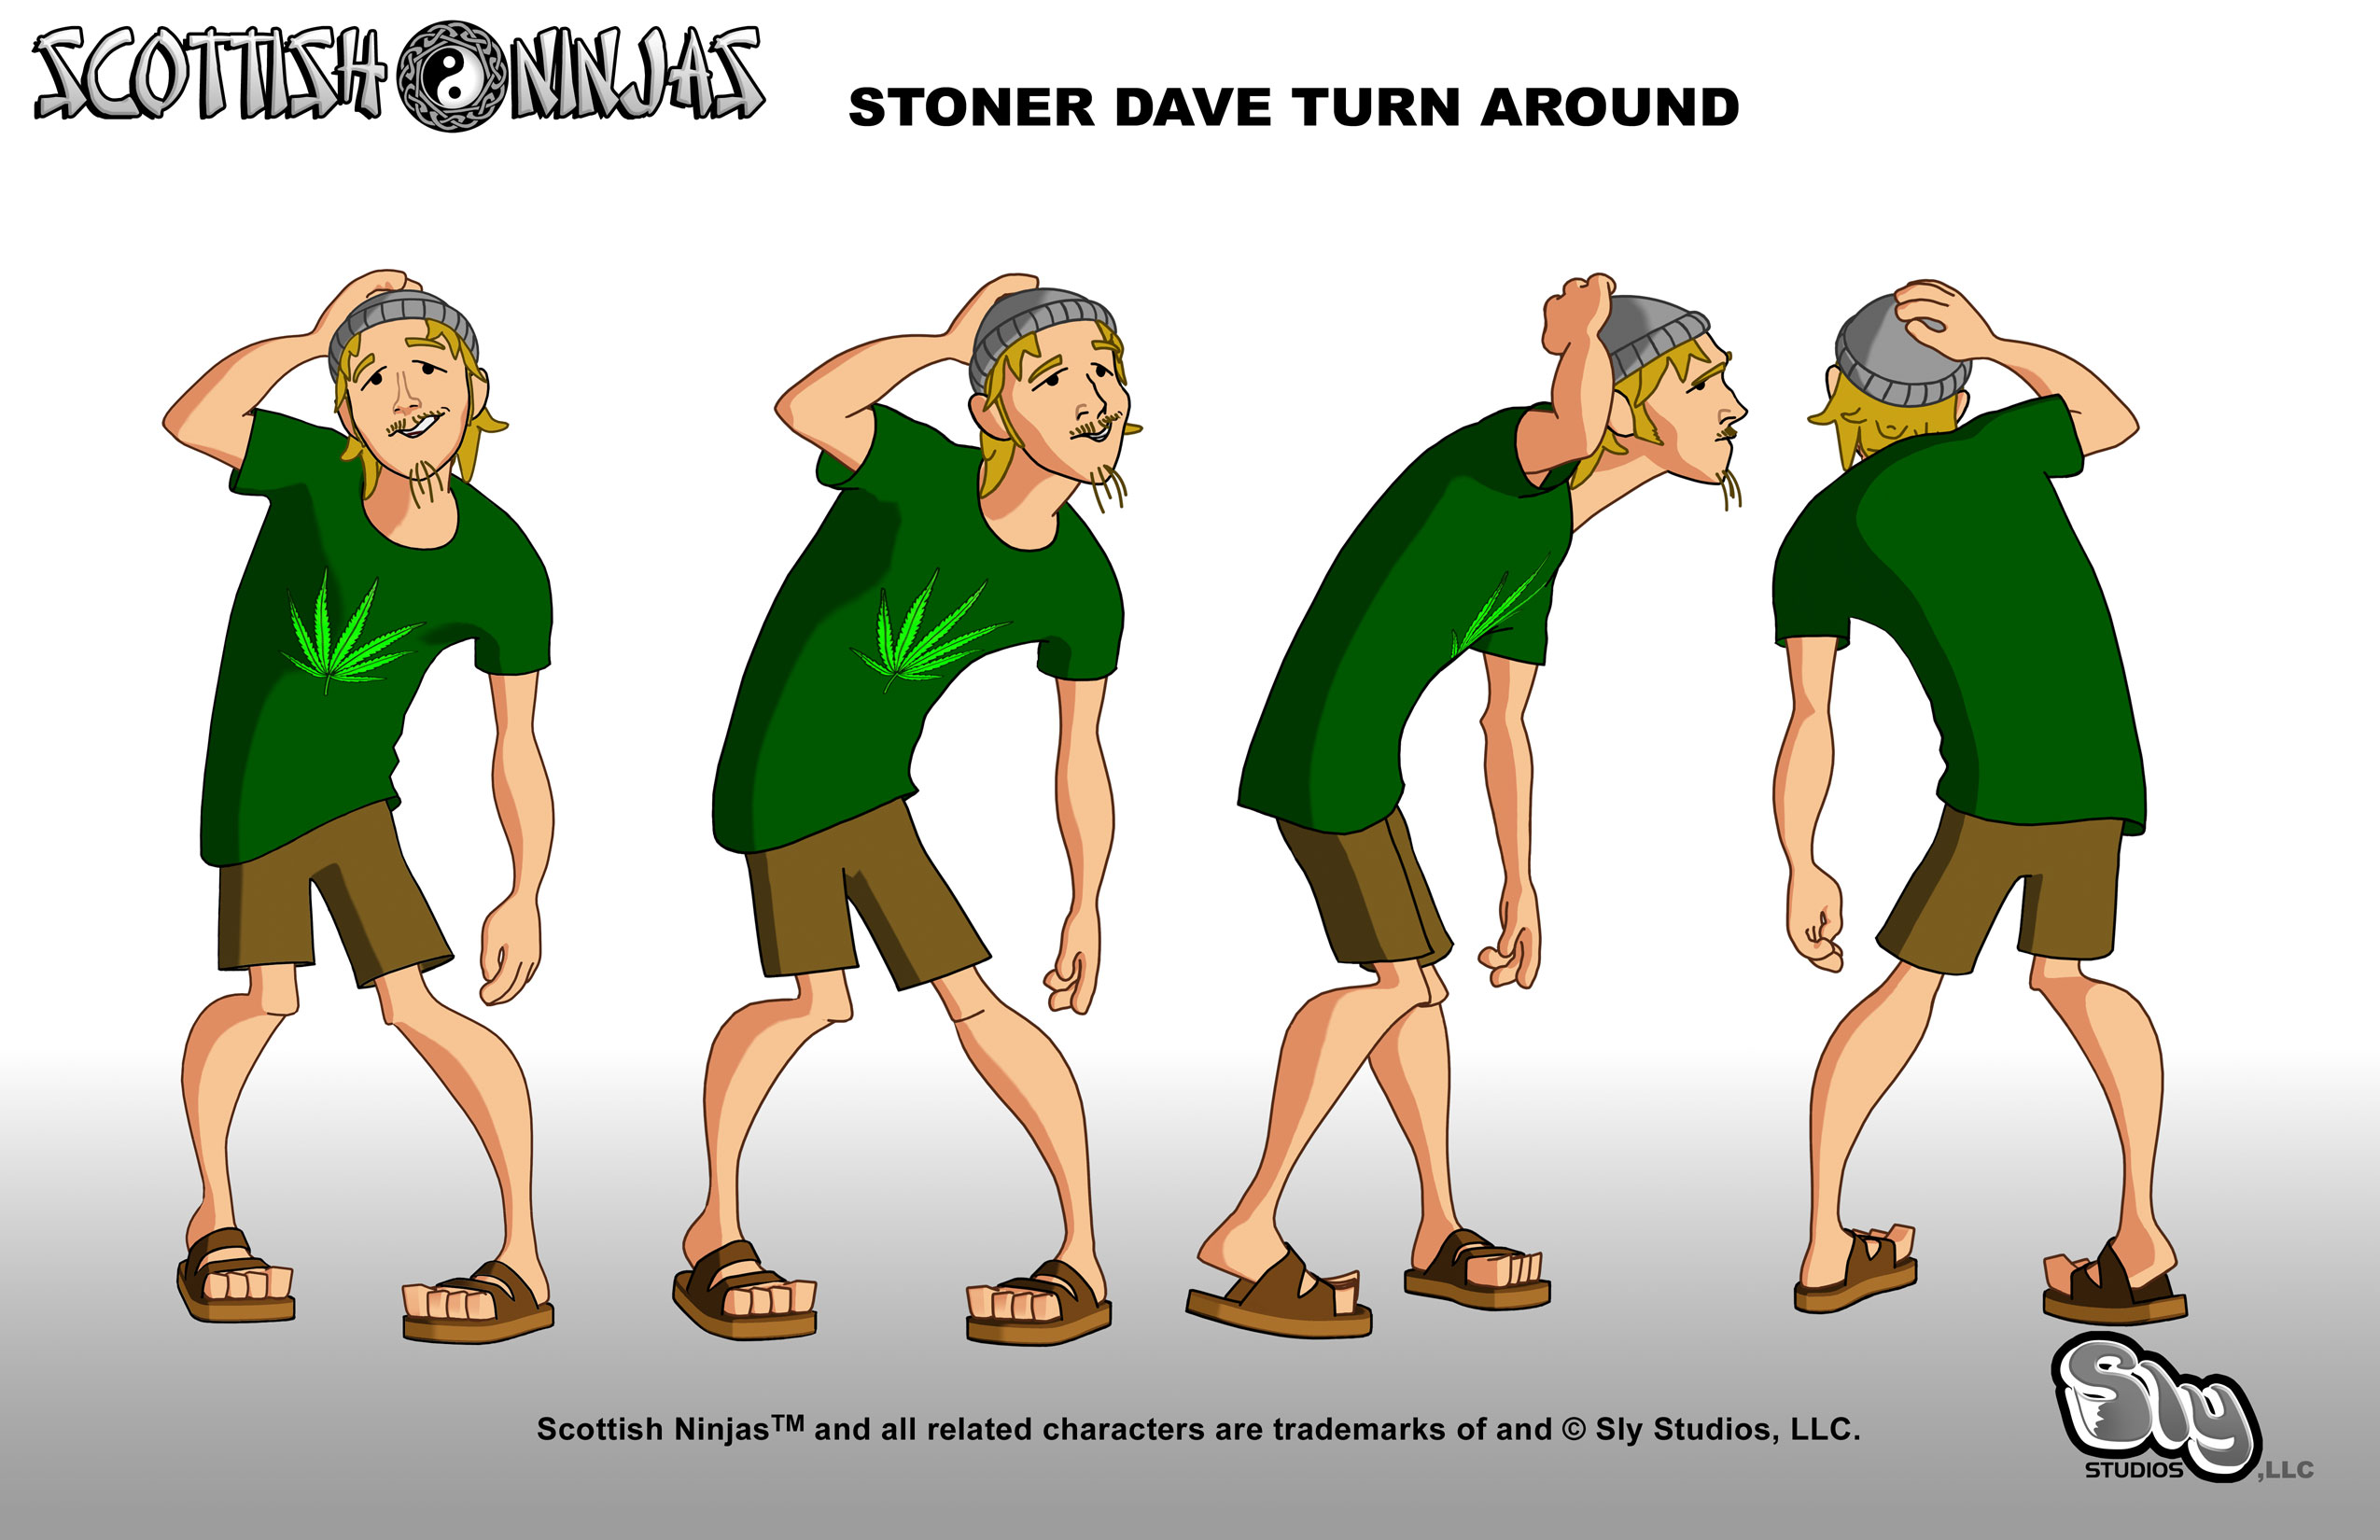 stoned cartoon characters tumblr